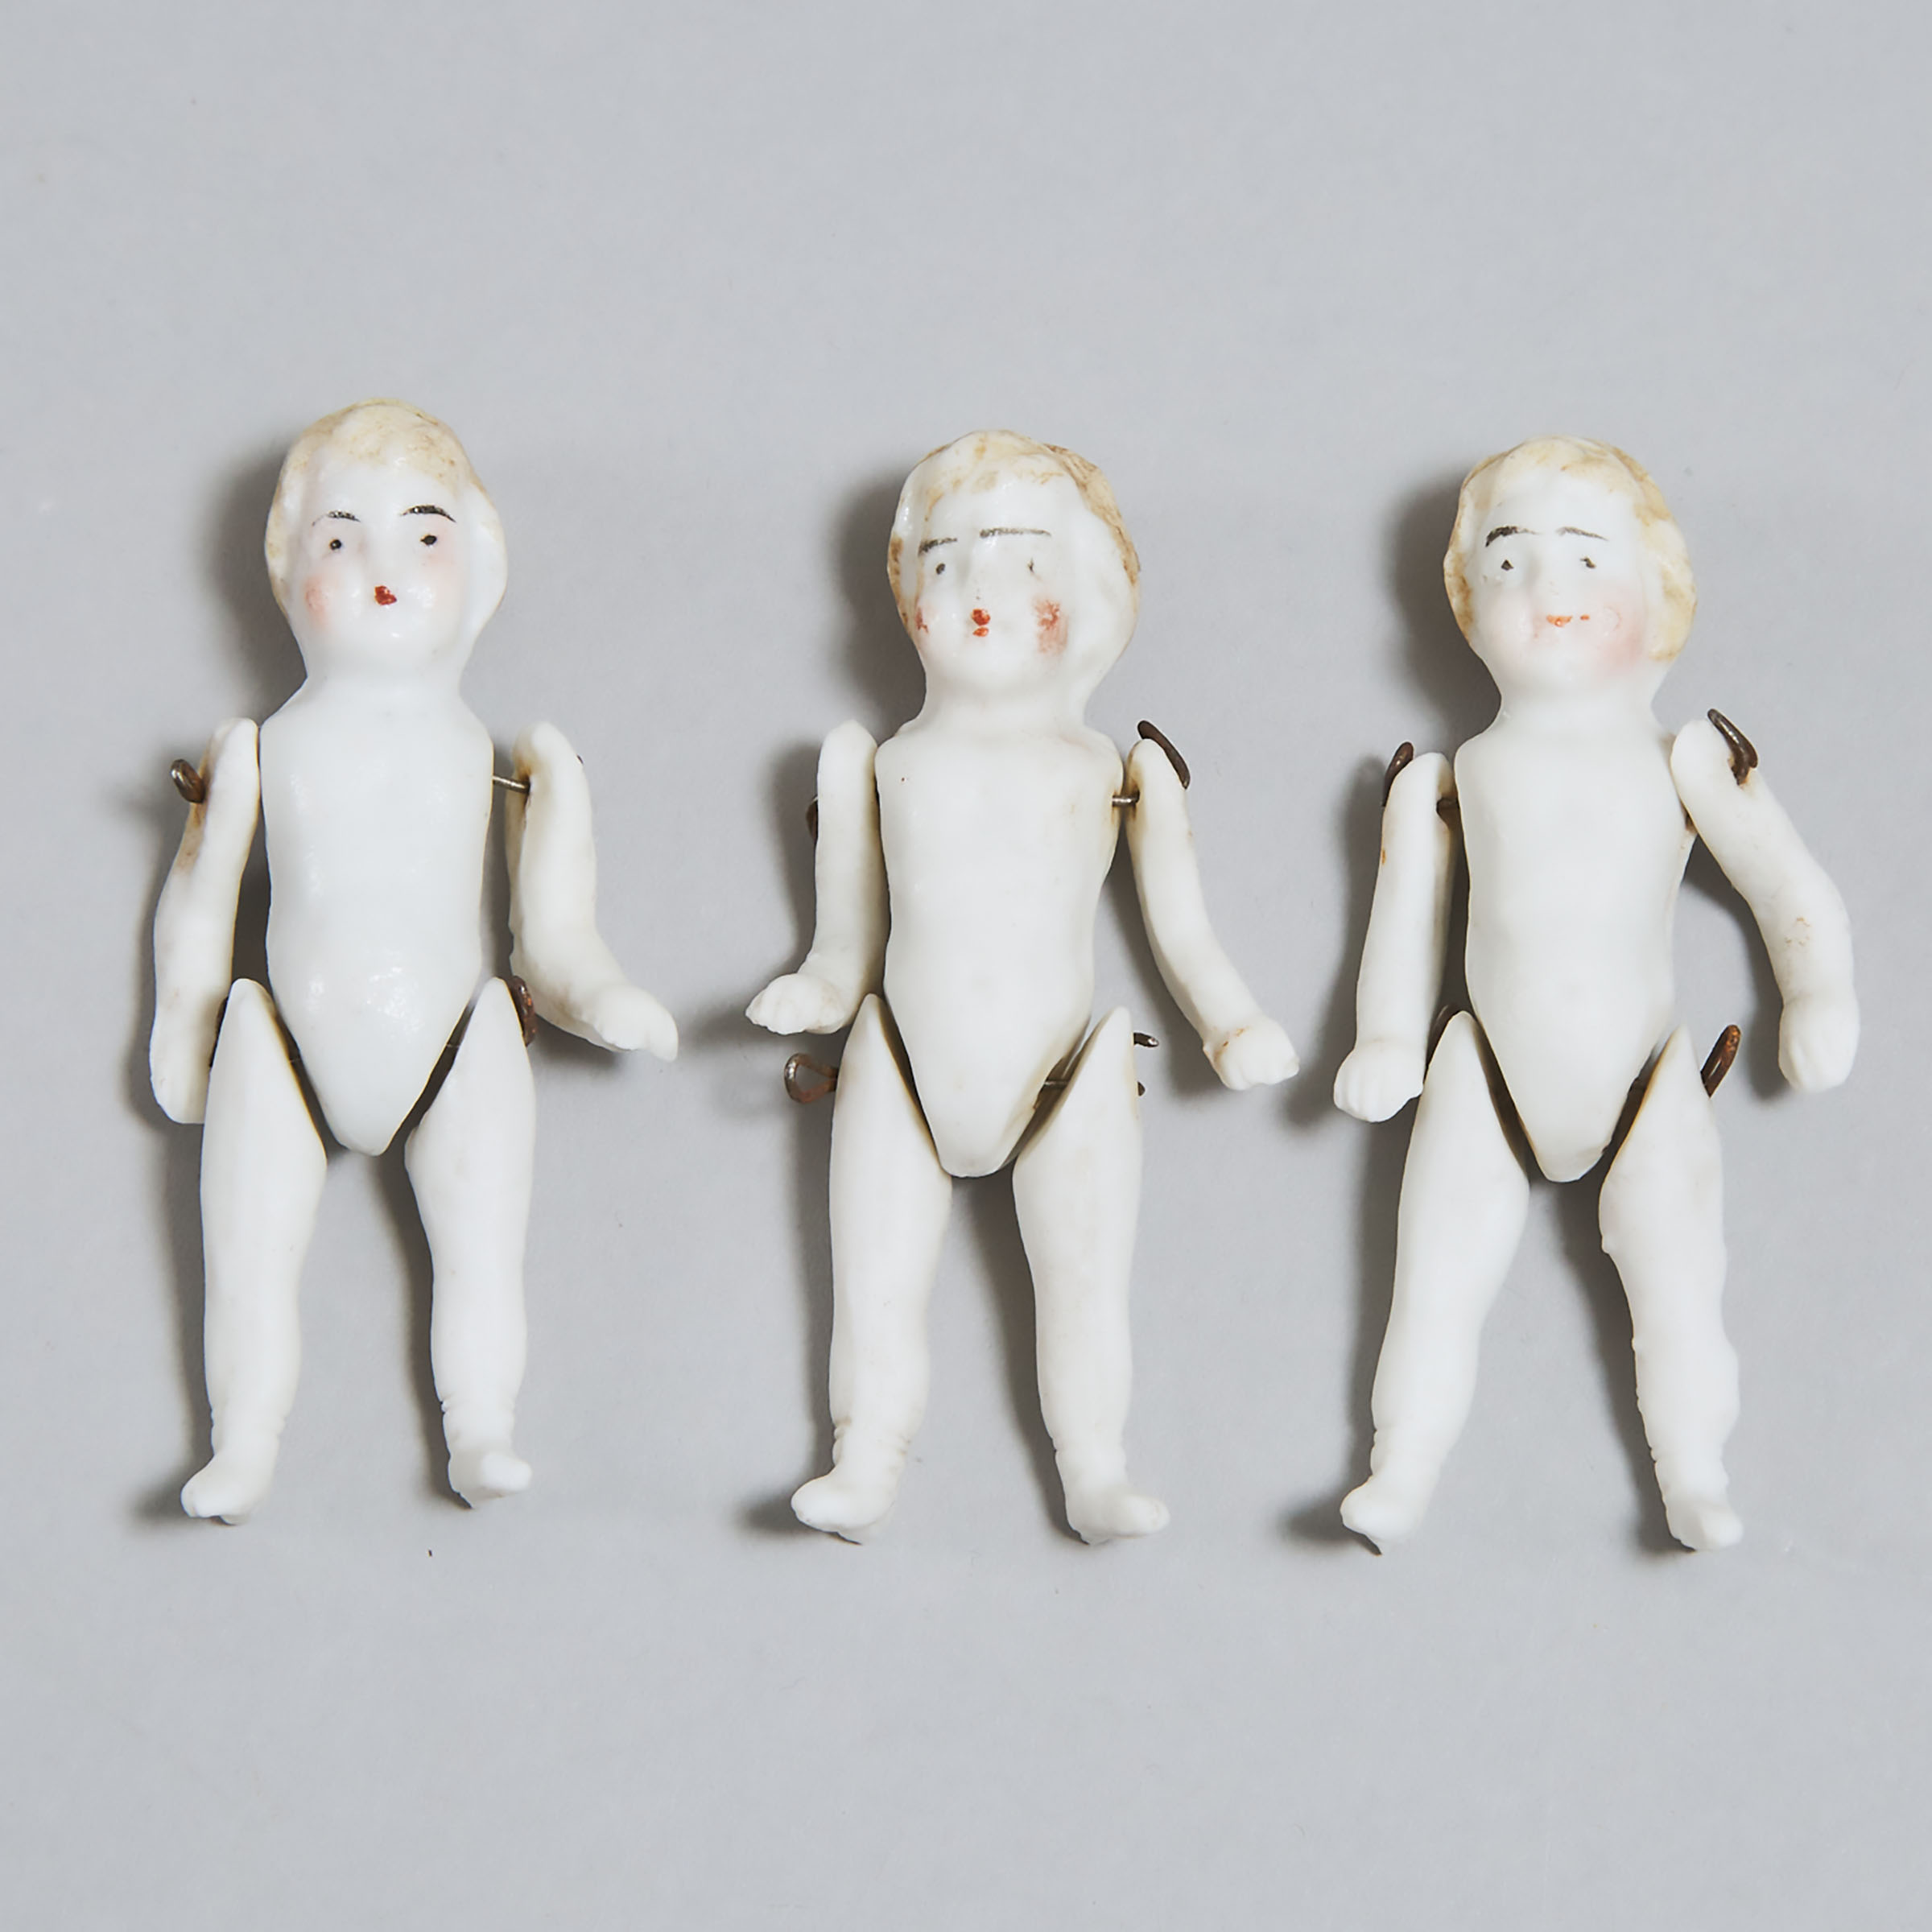 Three Miniature German Articulated Bisque Dolls, 19th century